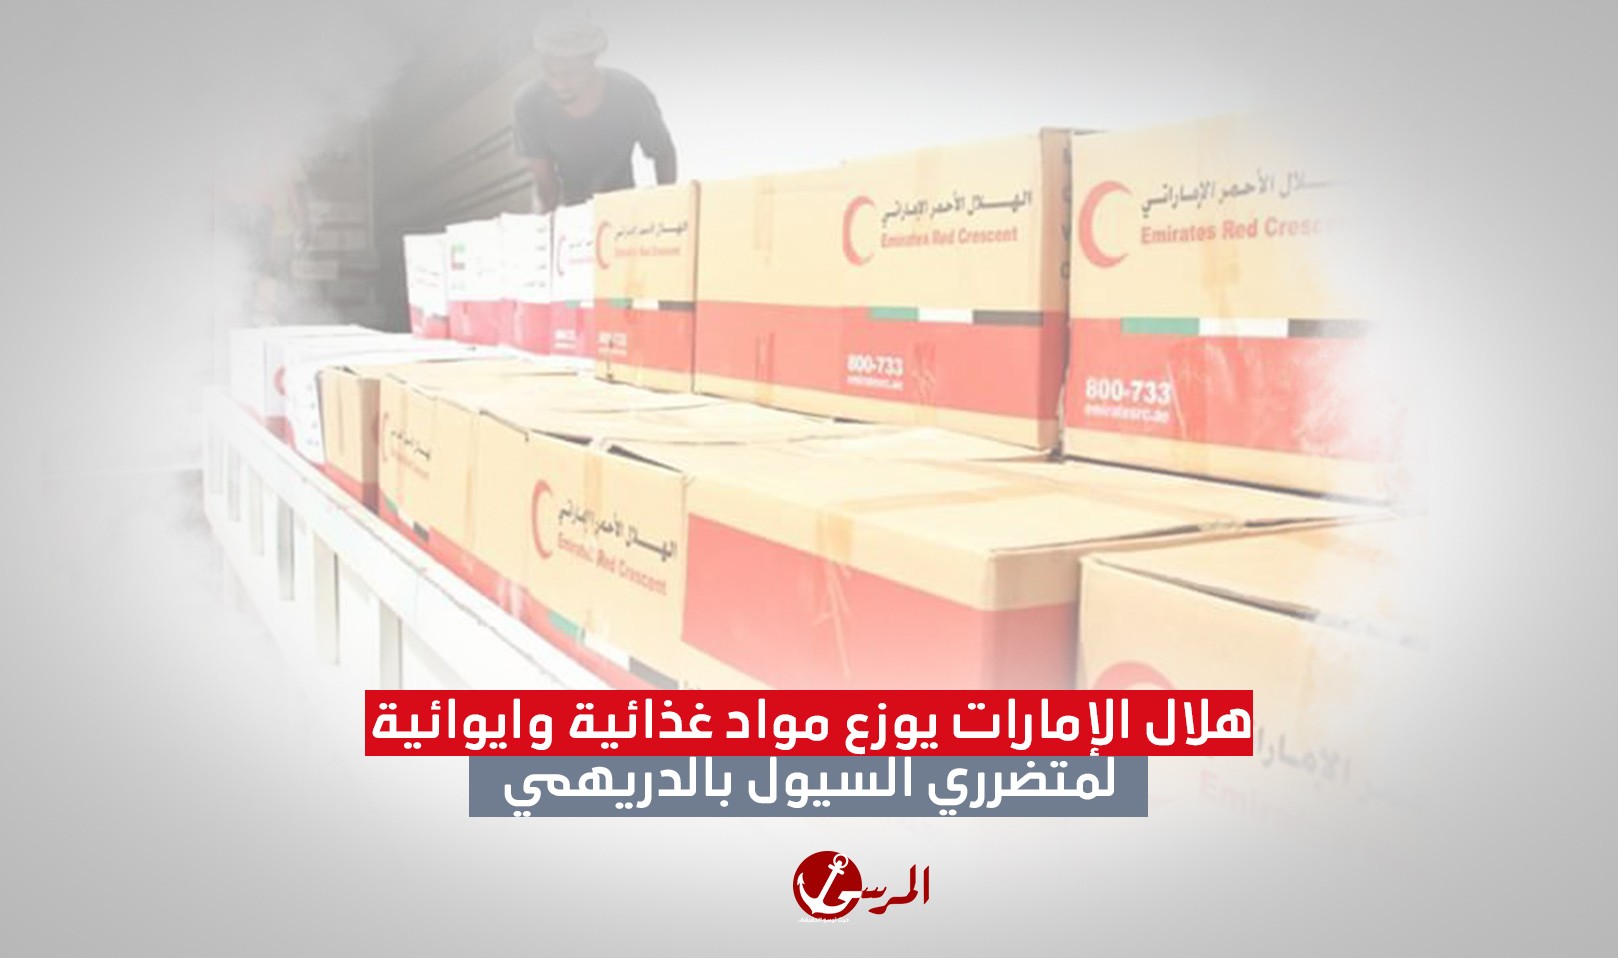 هلال الإمارات يوزع مواد غذائية وايوائية لمتضرري السيول بالدريهمي